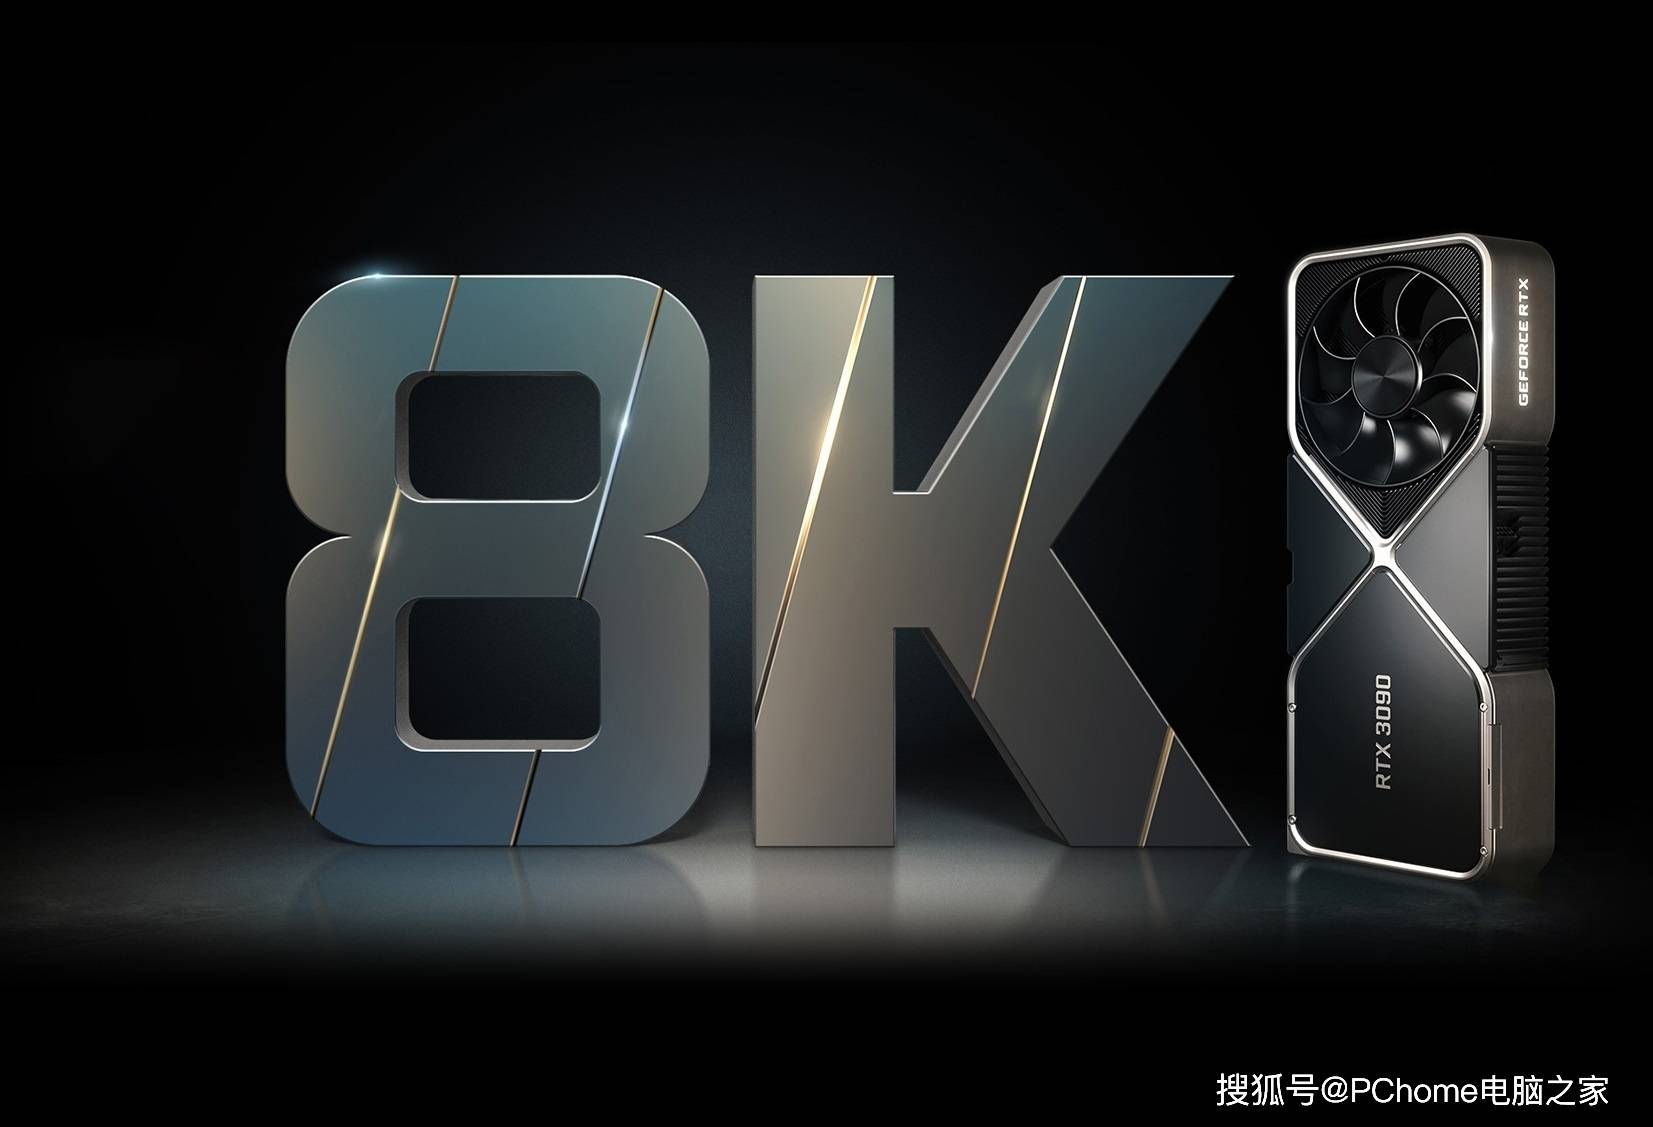 参数|RTX 3090 Ti参数曝光 功耗可达450W具有24GB显存容量